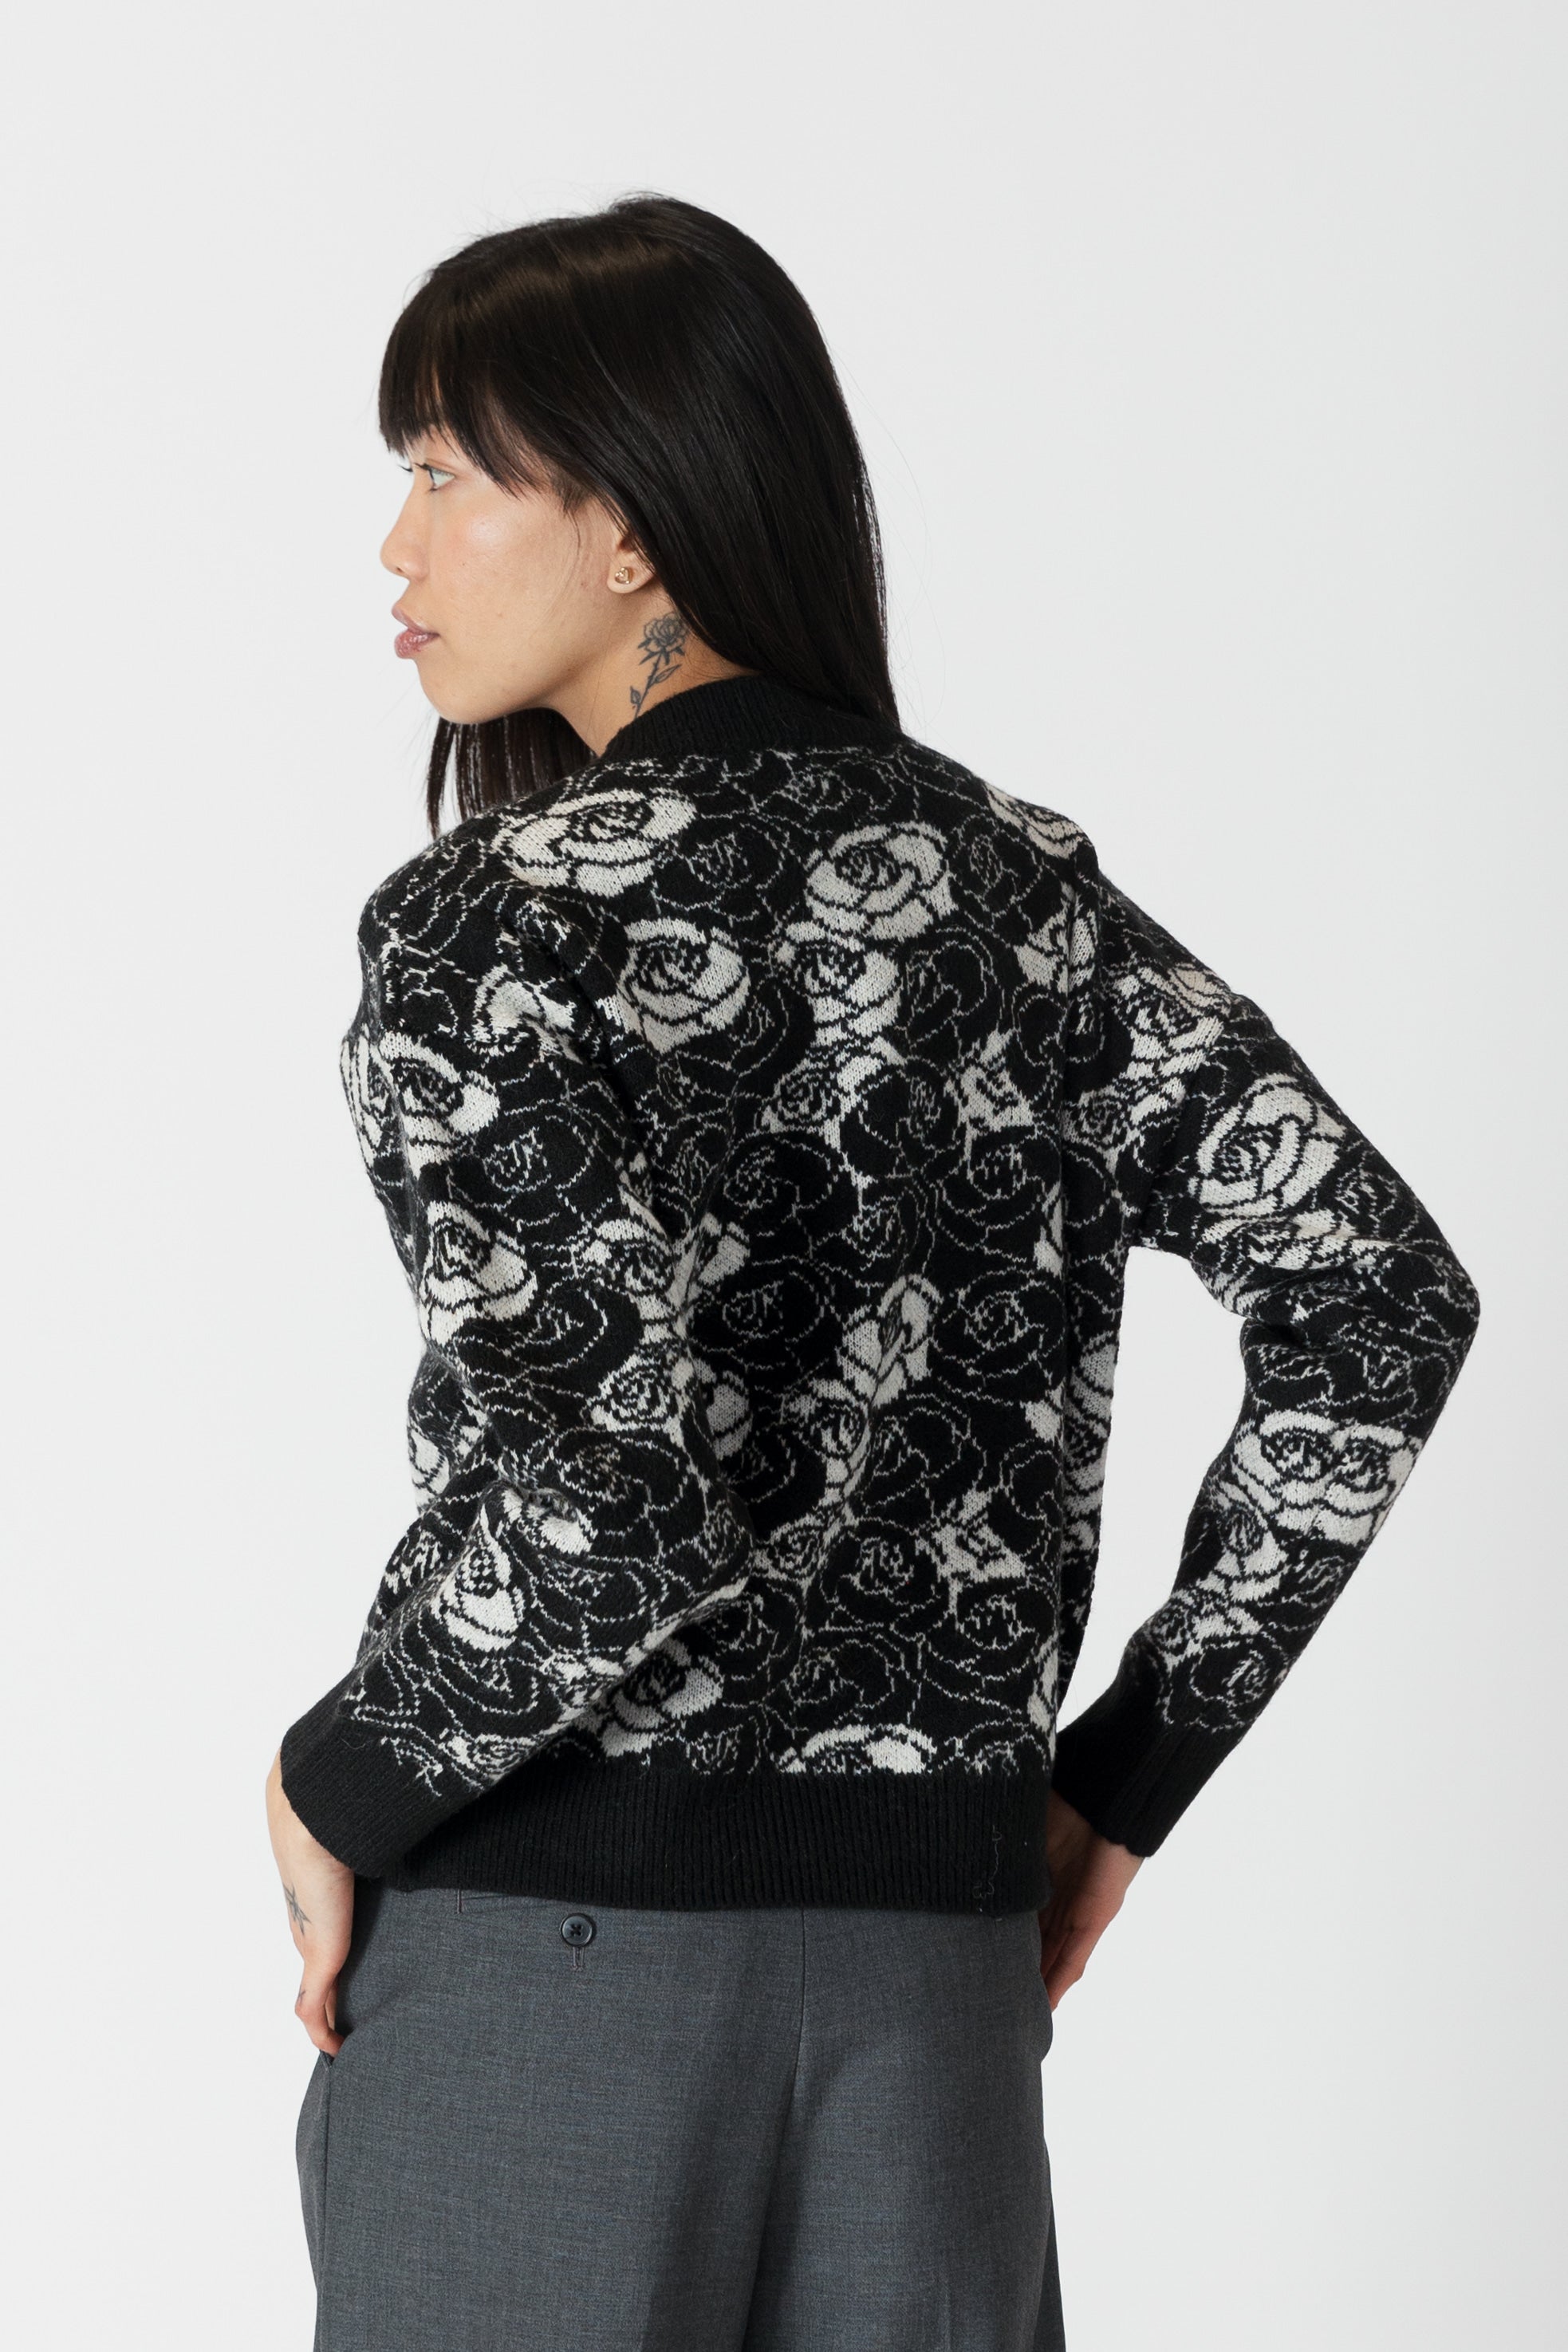 model wearing jordyn rose print crew neck sweater from lyla & luxe, rear view